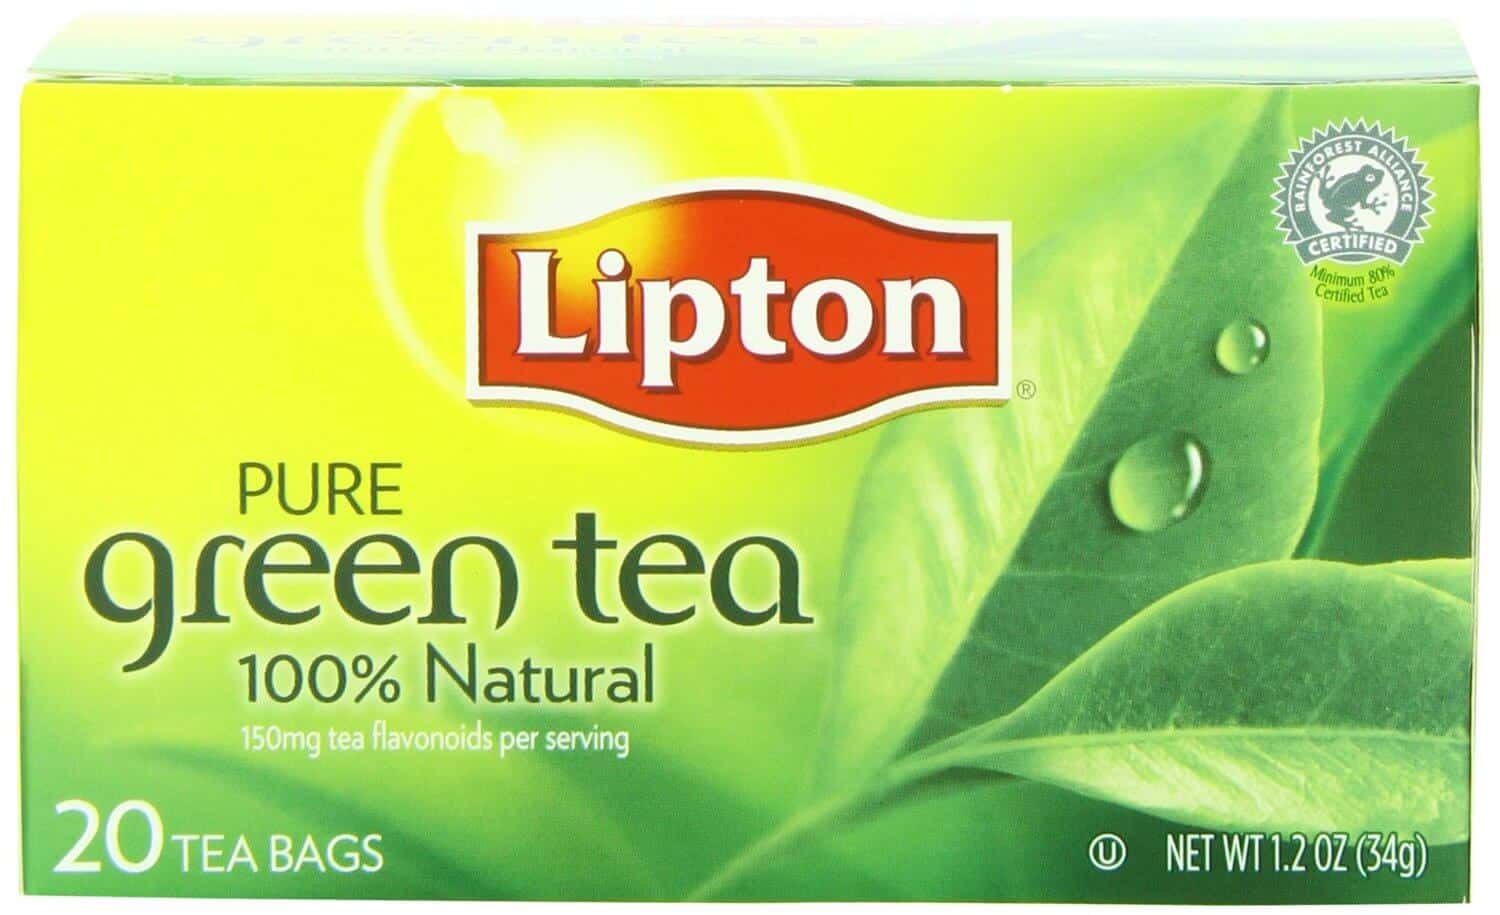 Lipton Green Tea Review (UPDATE: 2020)